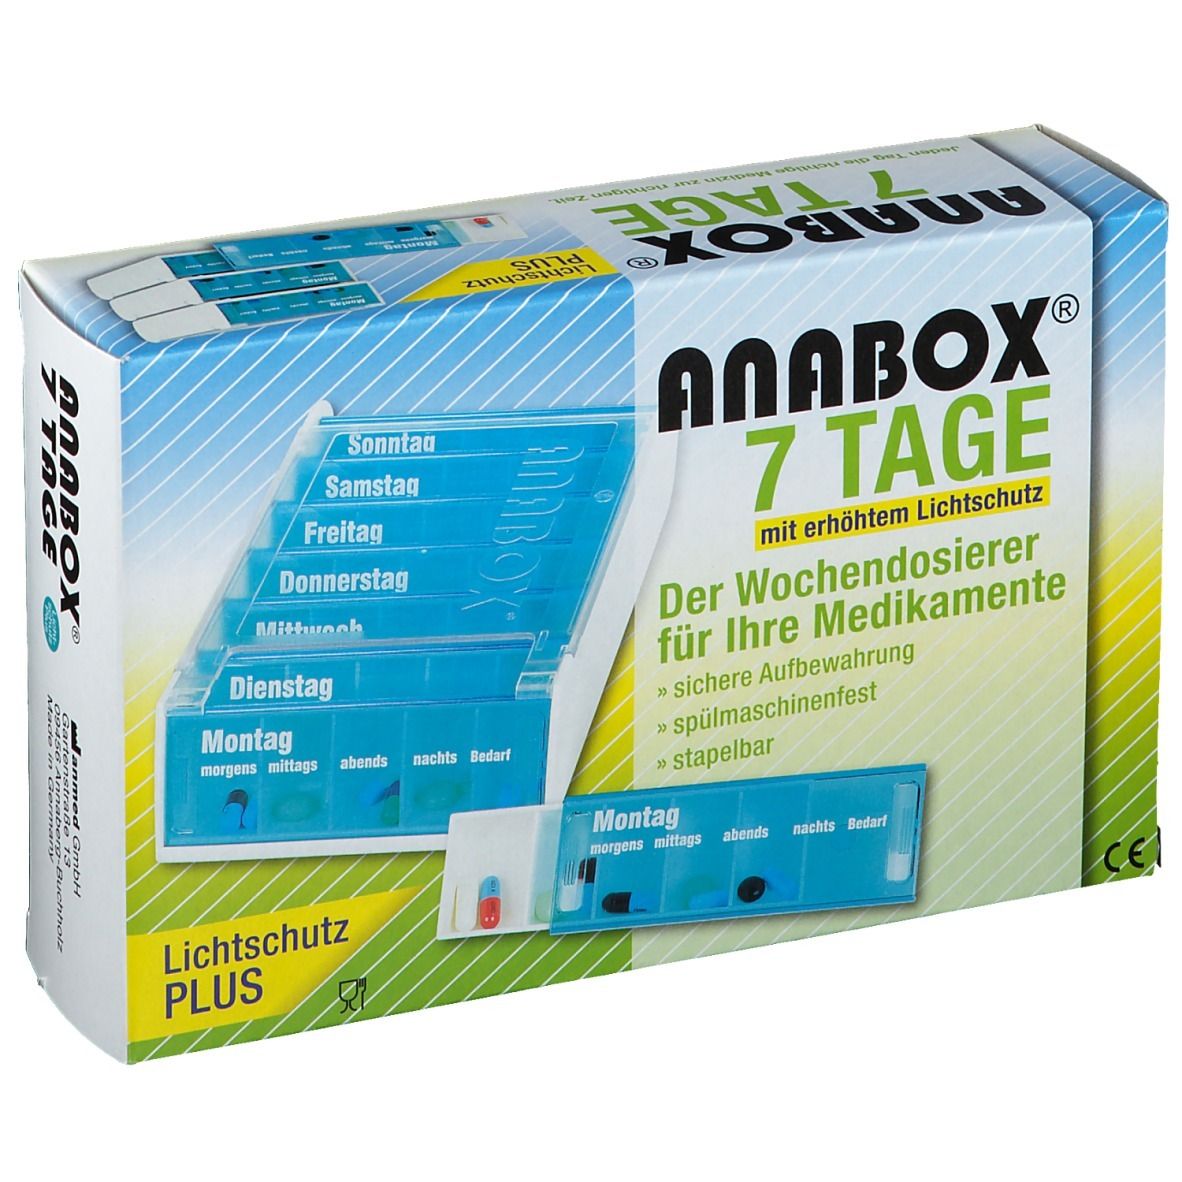 WEPA Anabox® 7 Tage Lichtschutz